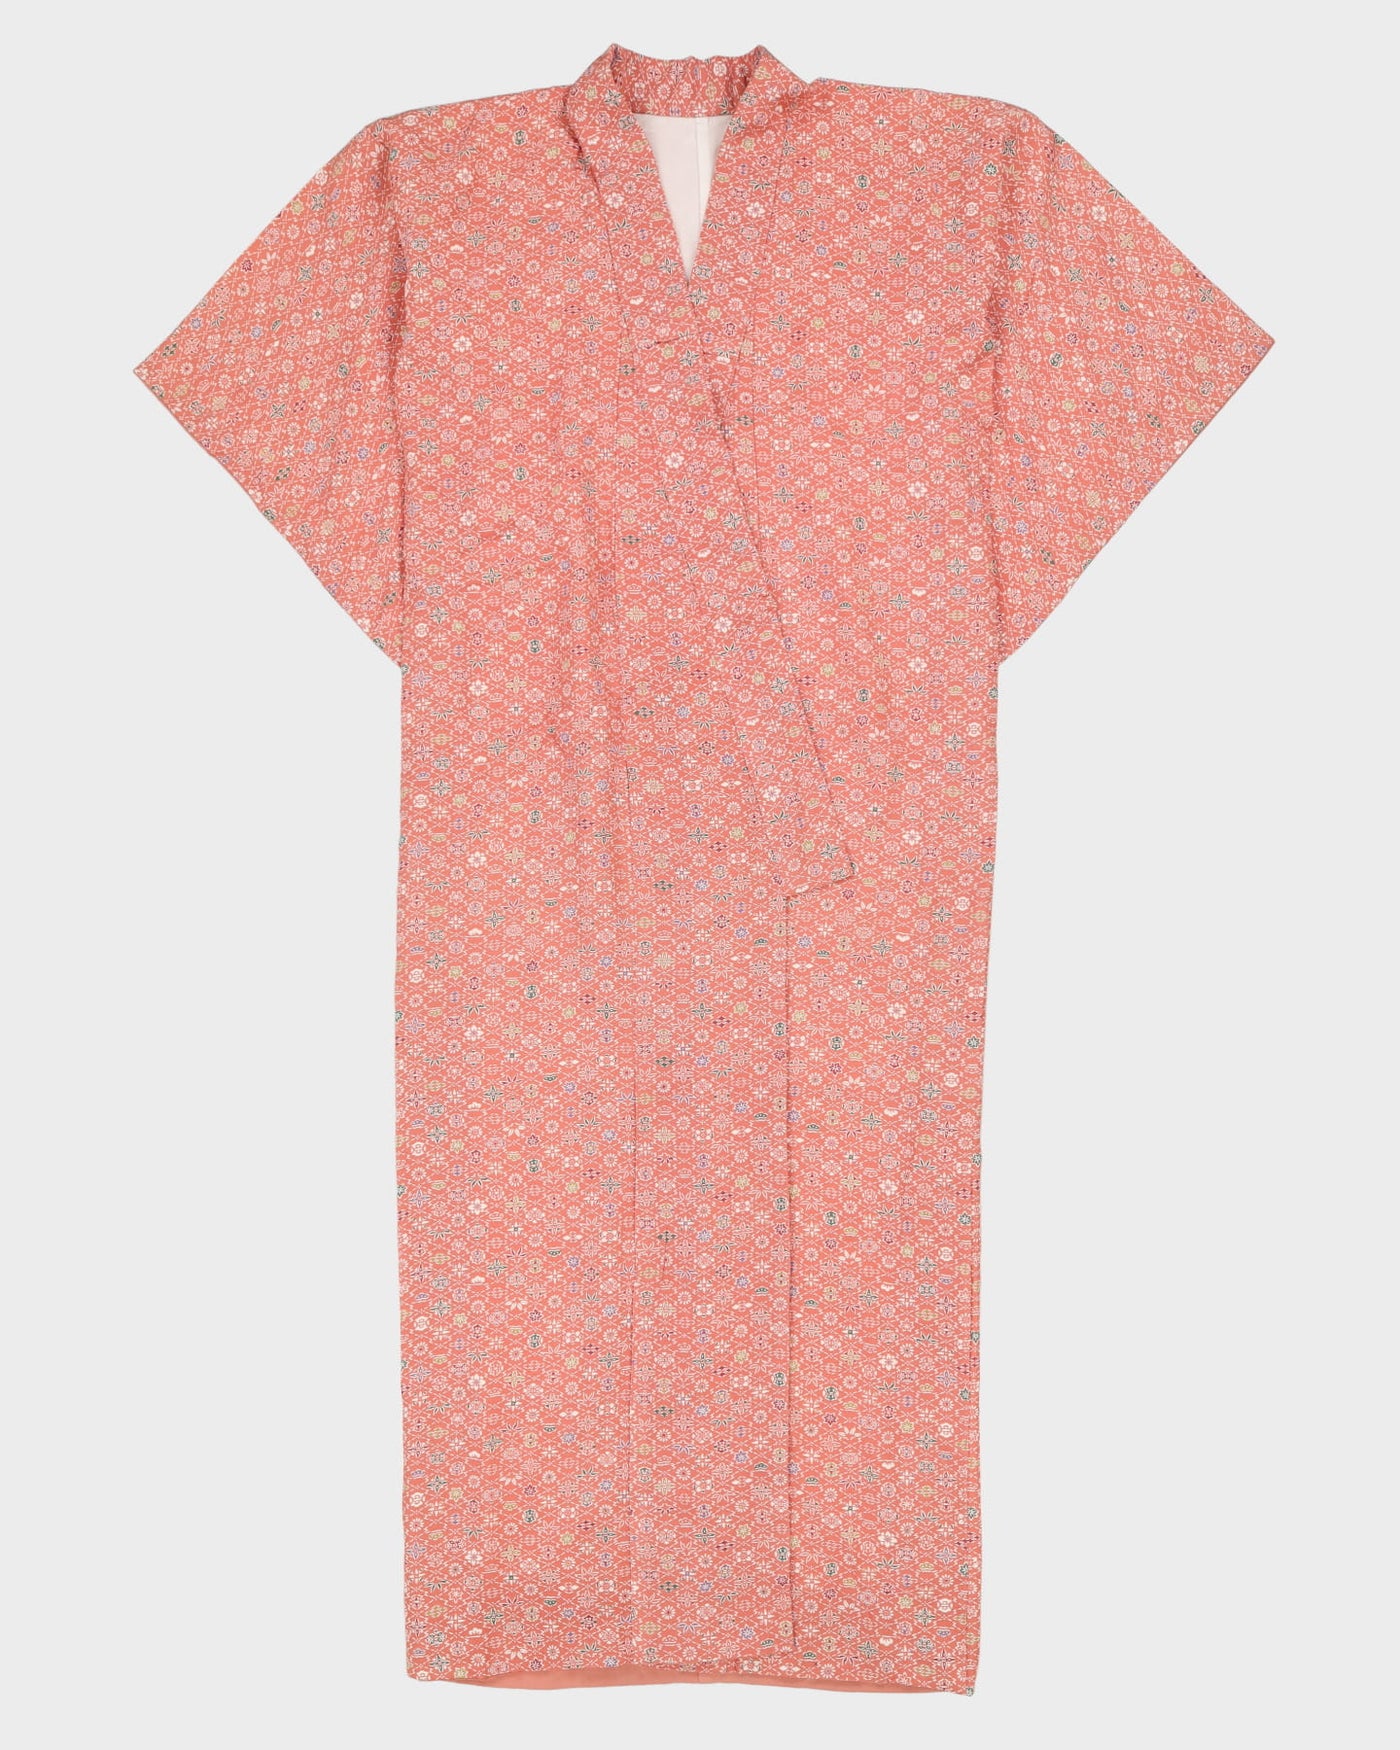 Dusky Pink Patterned Kimono - M / L